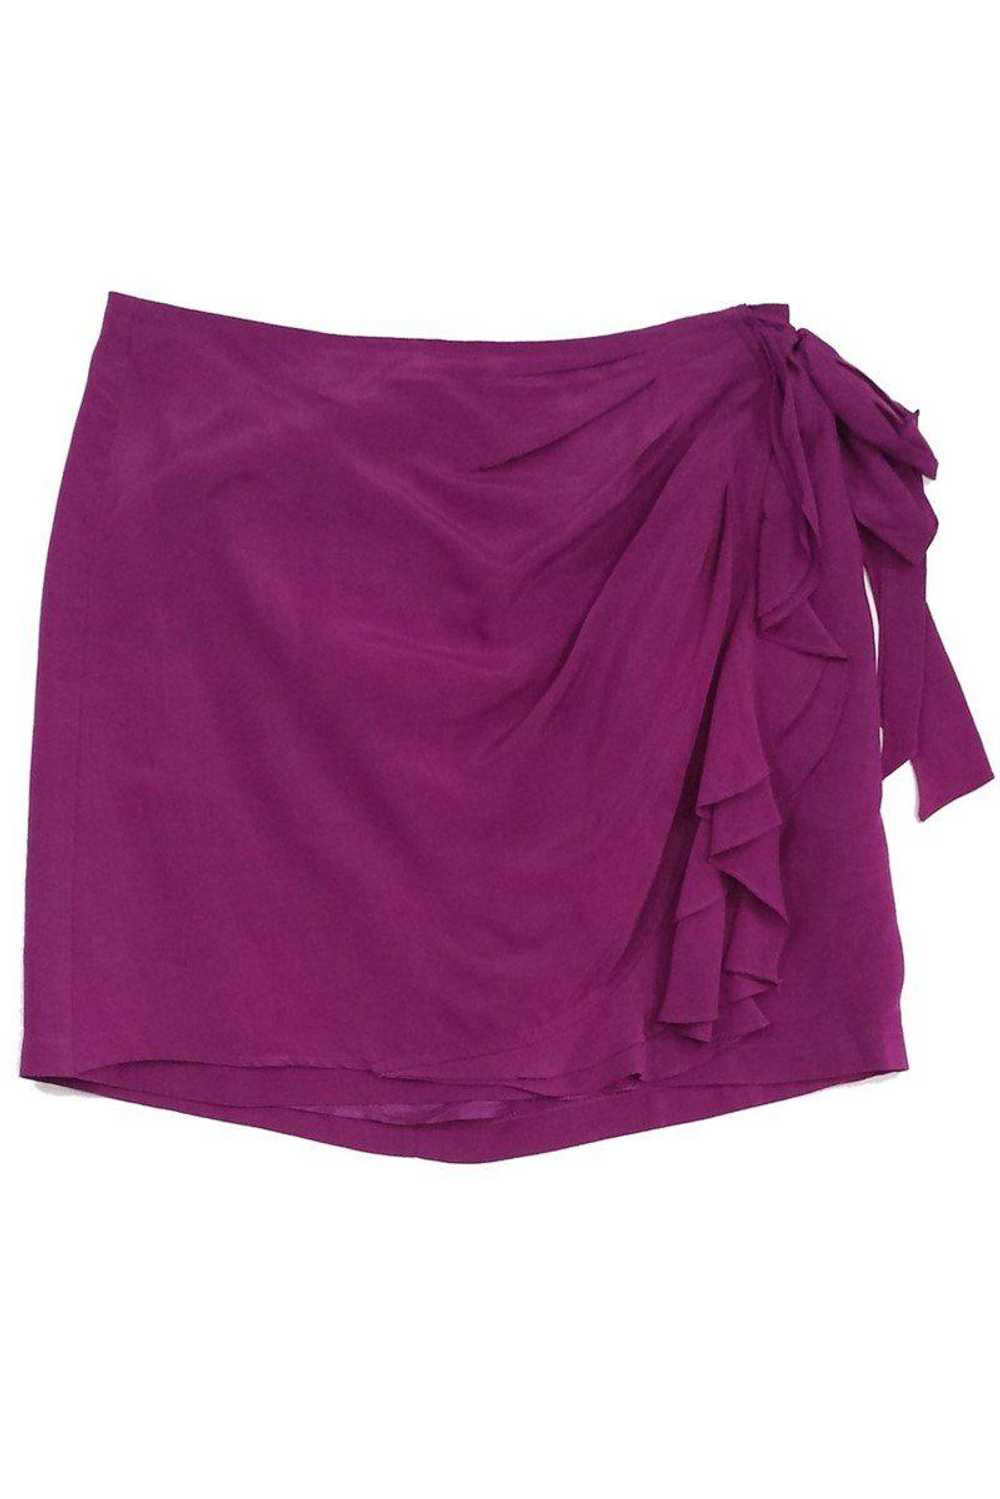 Nanette Lepore - Violet Ruffle Bow Silk Skirt Sz 6 - image 2